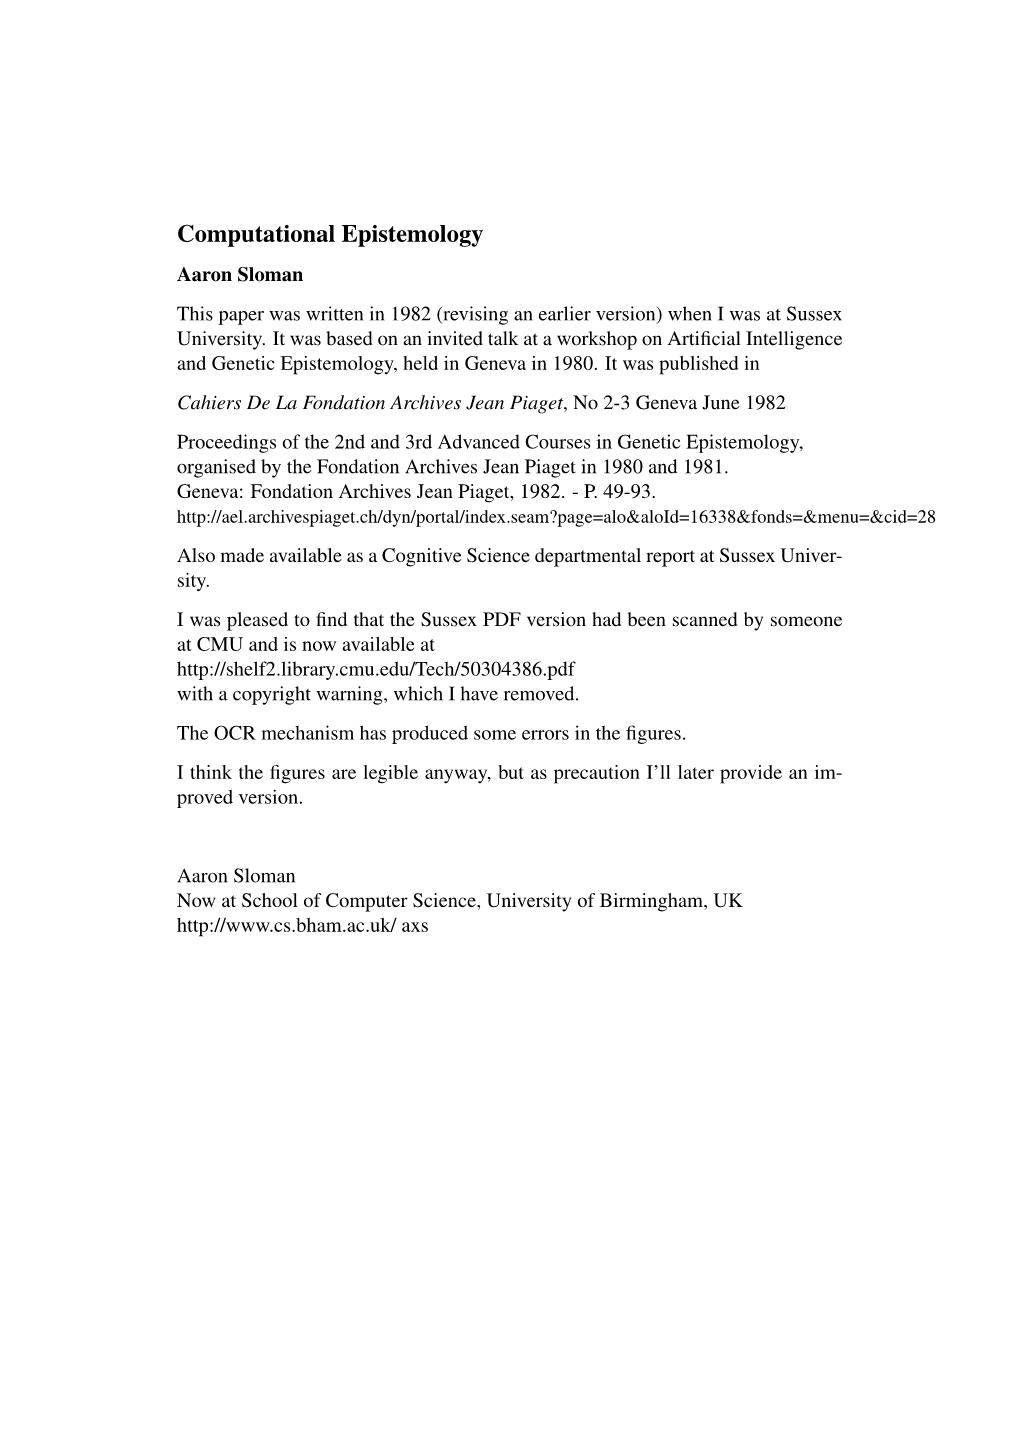 Filename: Comp-Epistemology-Sloman.Pdf